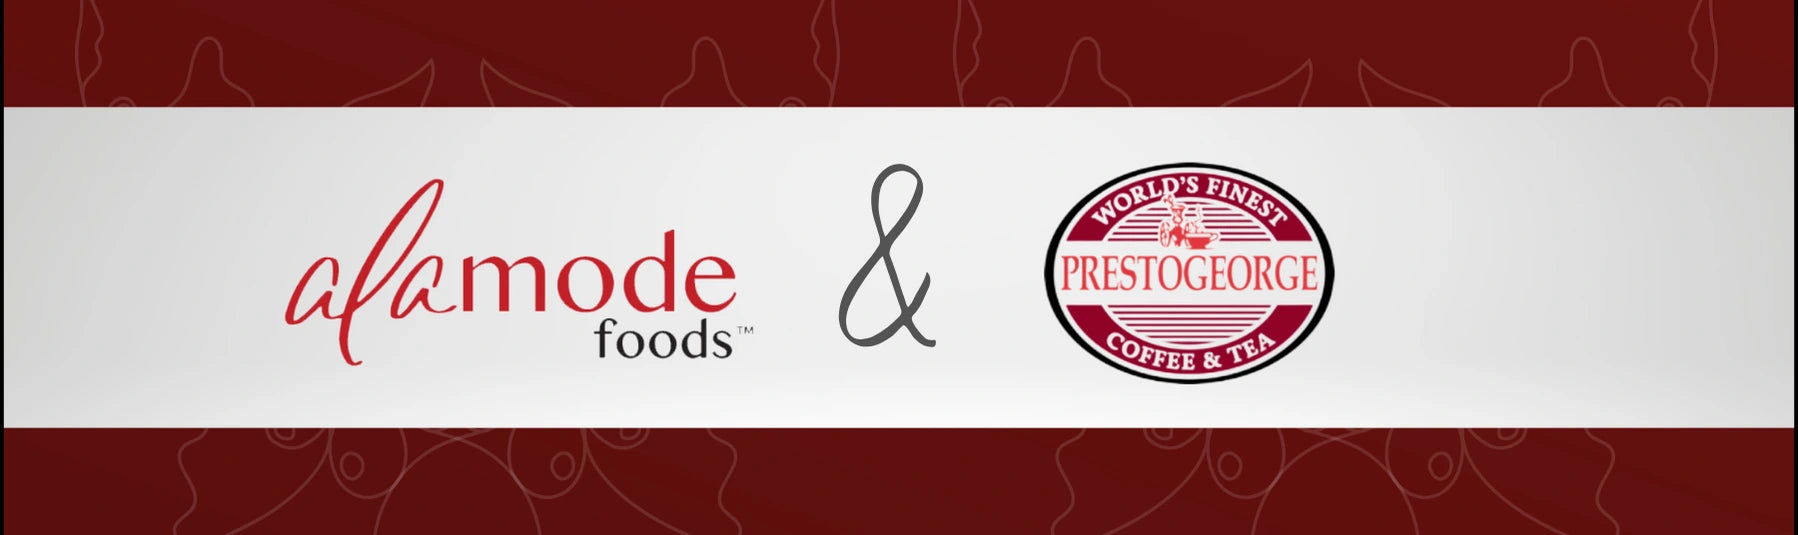 Roastery Story: Alamode Foods and Prestogeorge Coffee & Tea